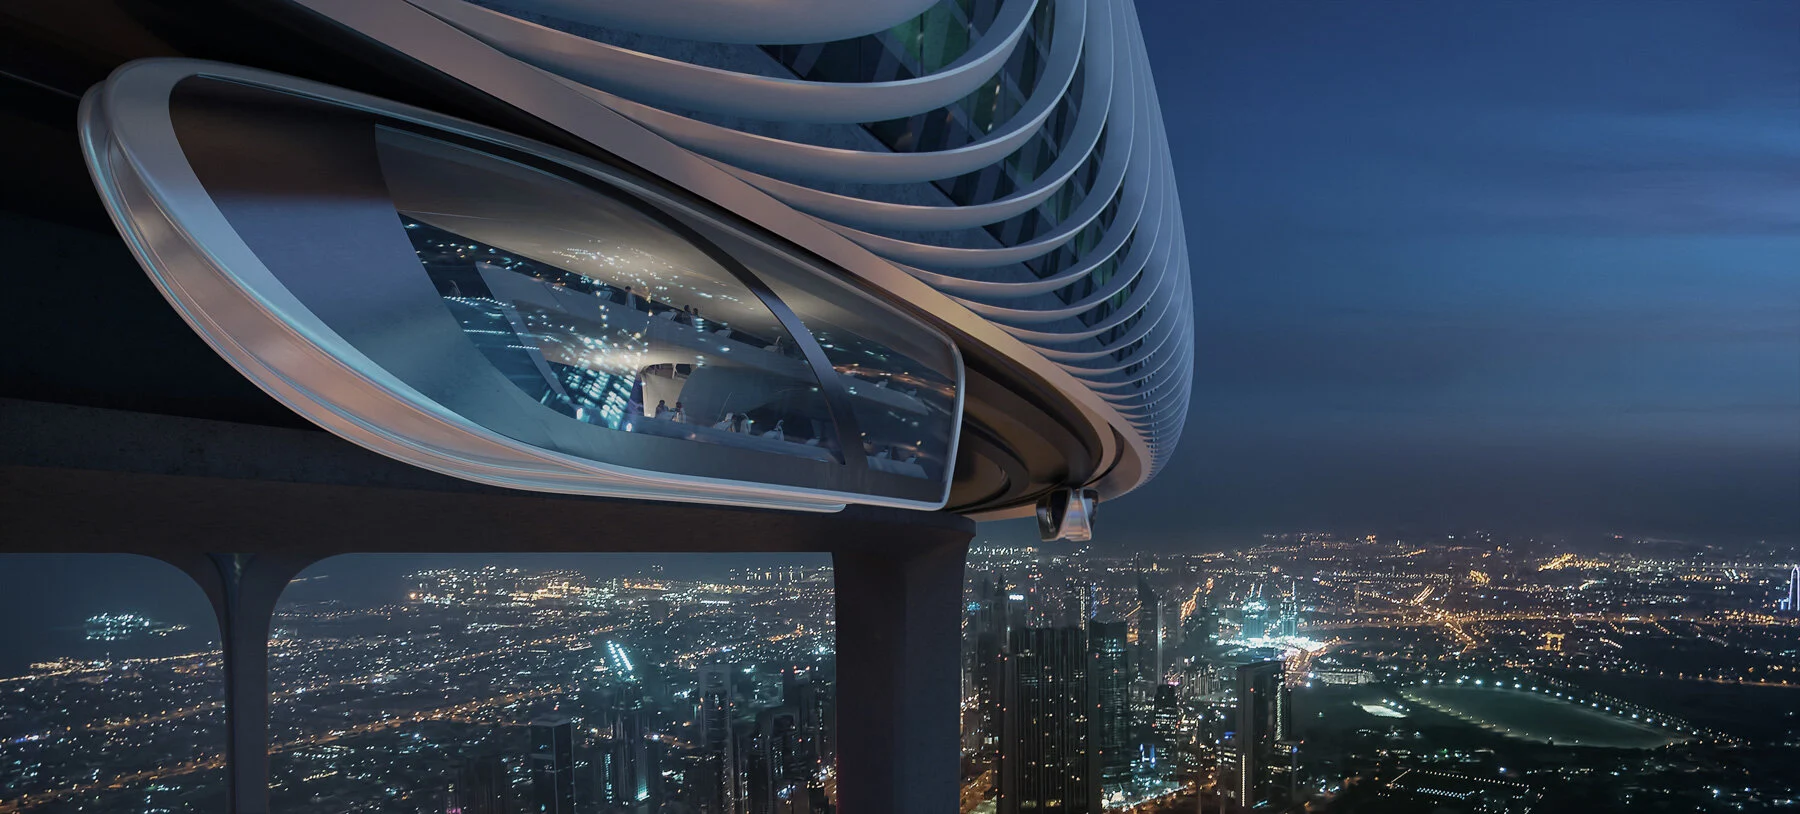 Downtown Circle – В Дубае хотят построить кольцеобразный город на высоте 550 метров с различными зонами, парками и подвесным транспортом